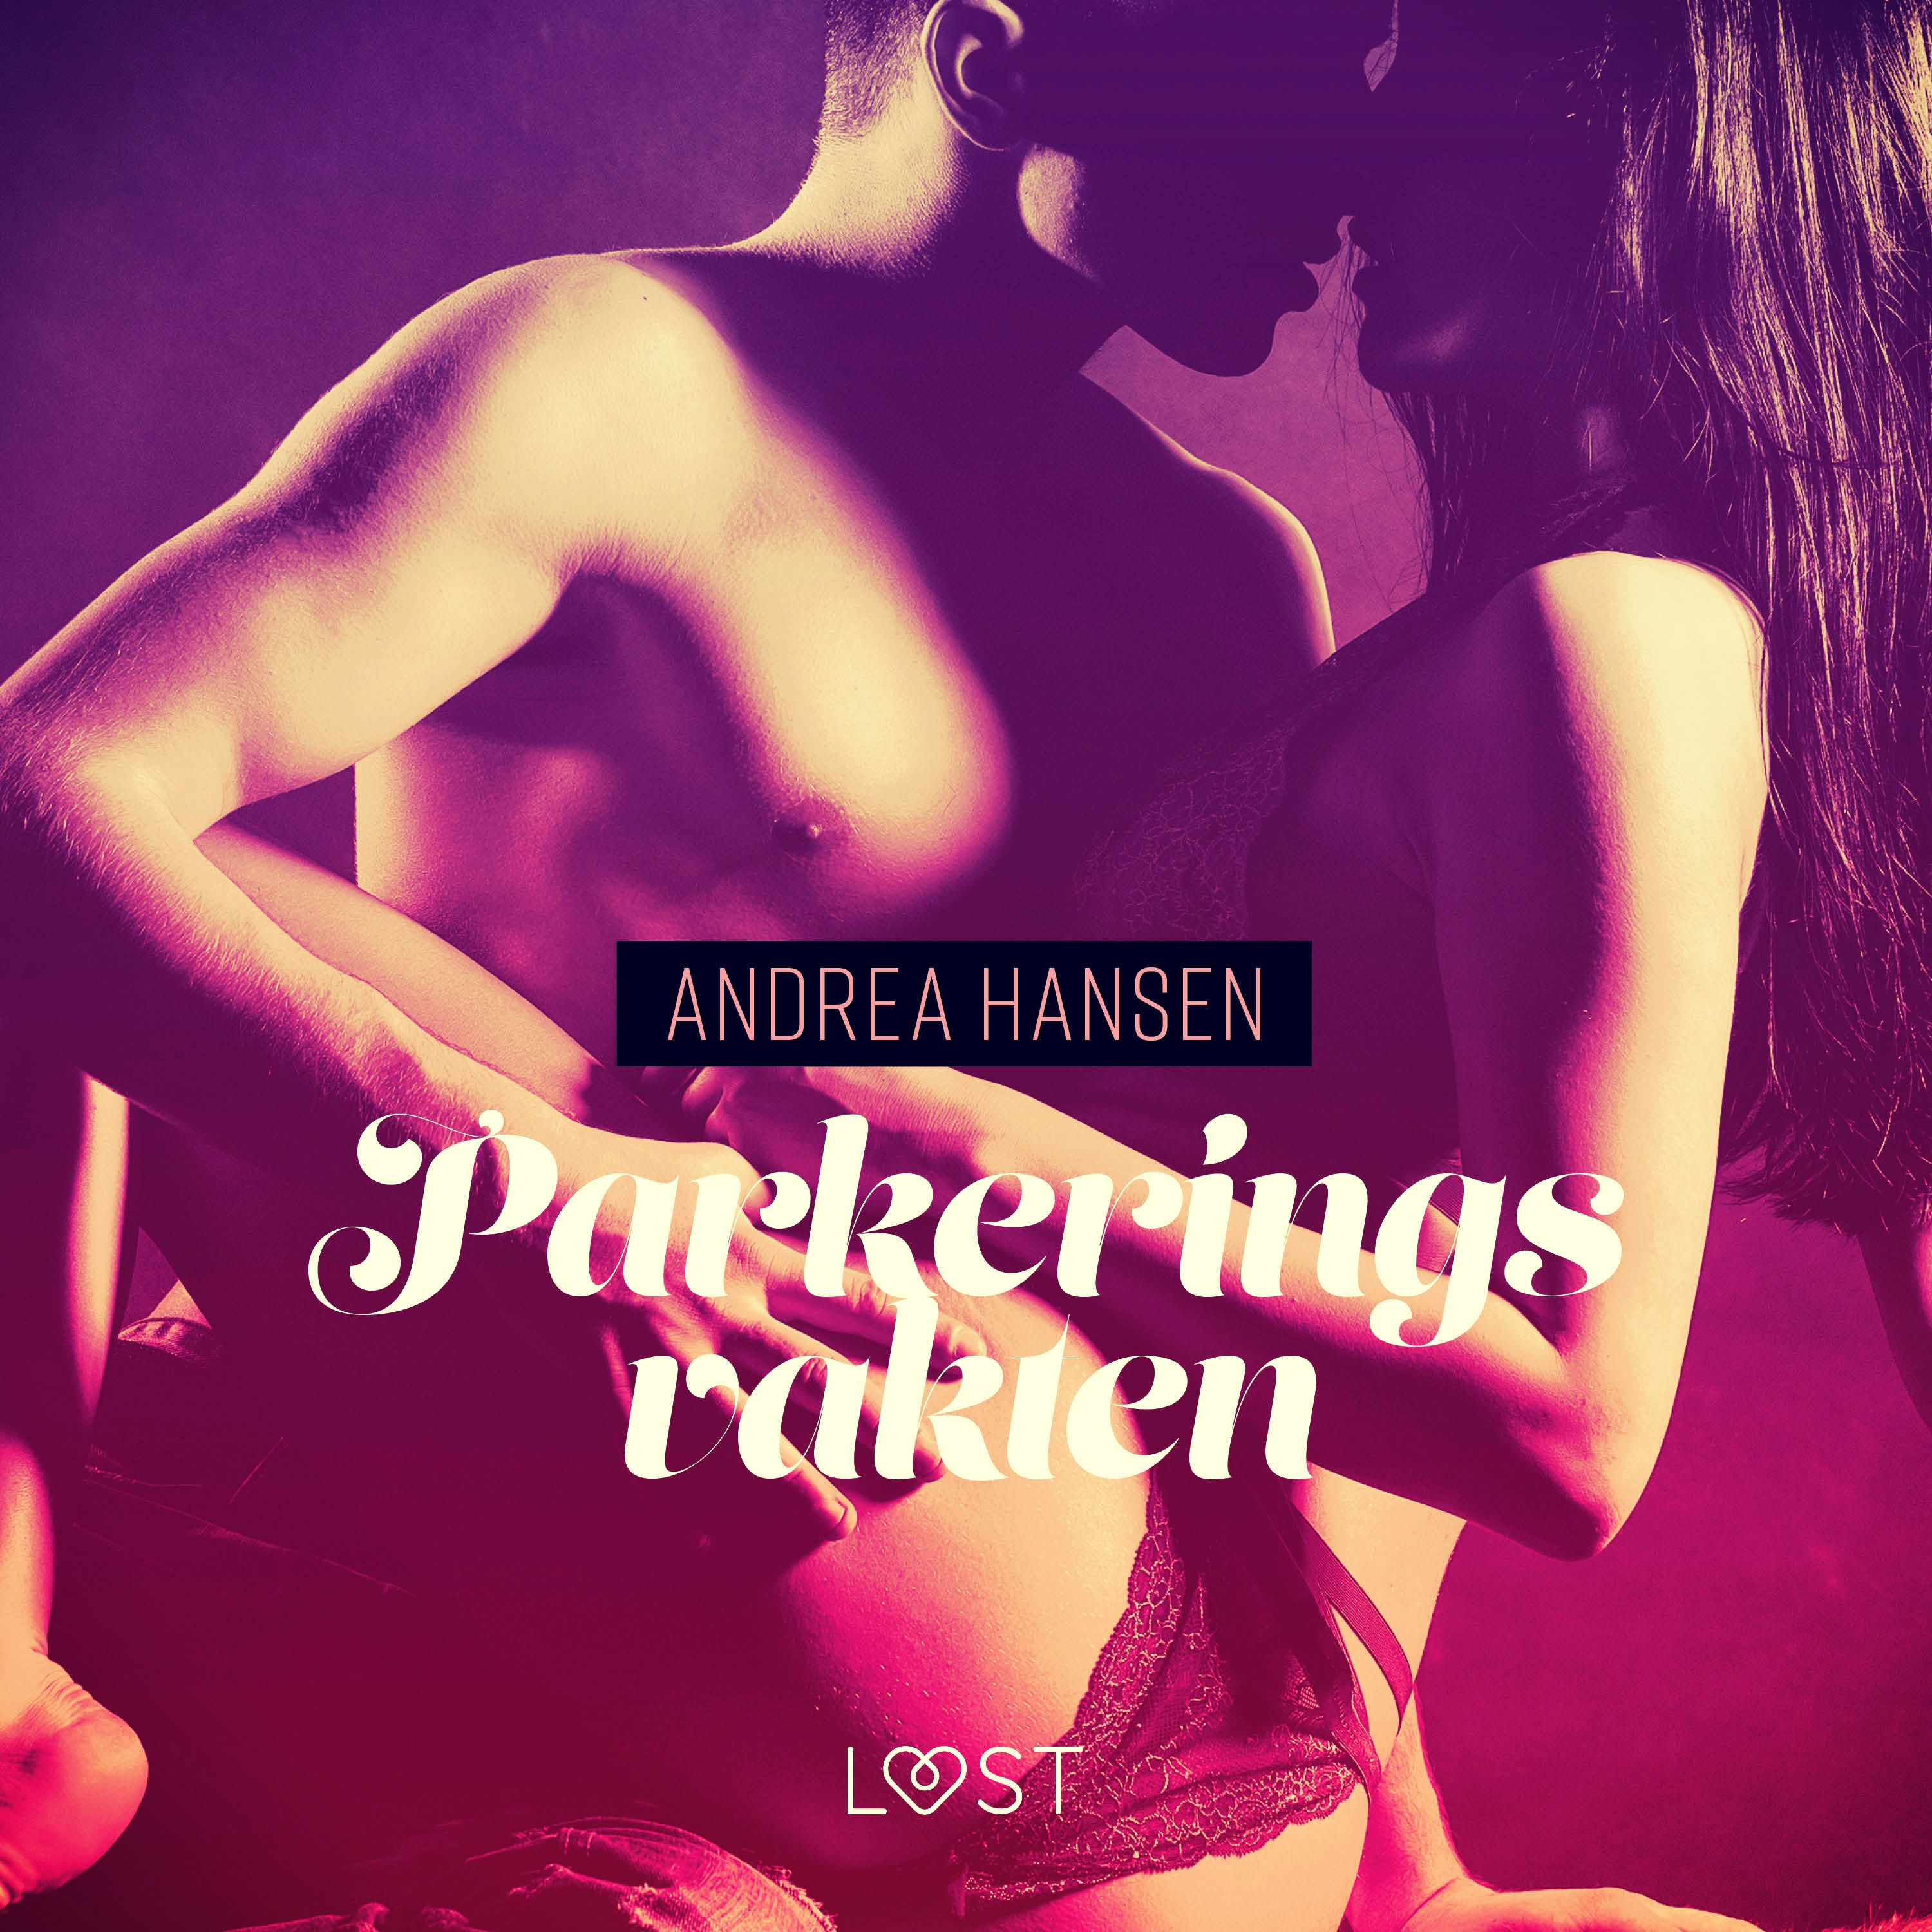 Parkeringsvakten - erotisk novell, lydbog af Andrea Hansen